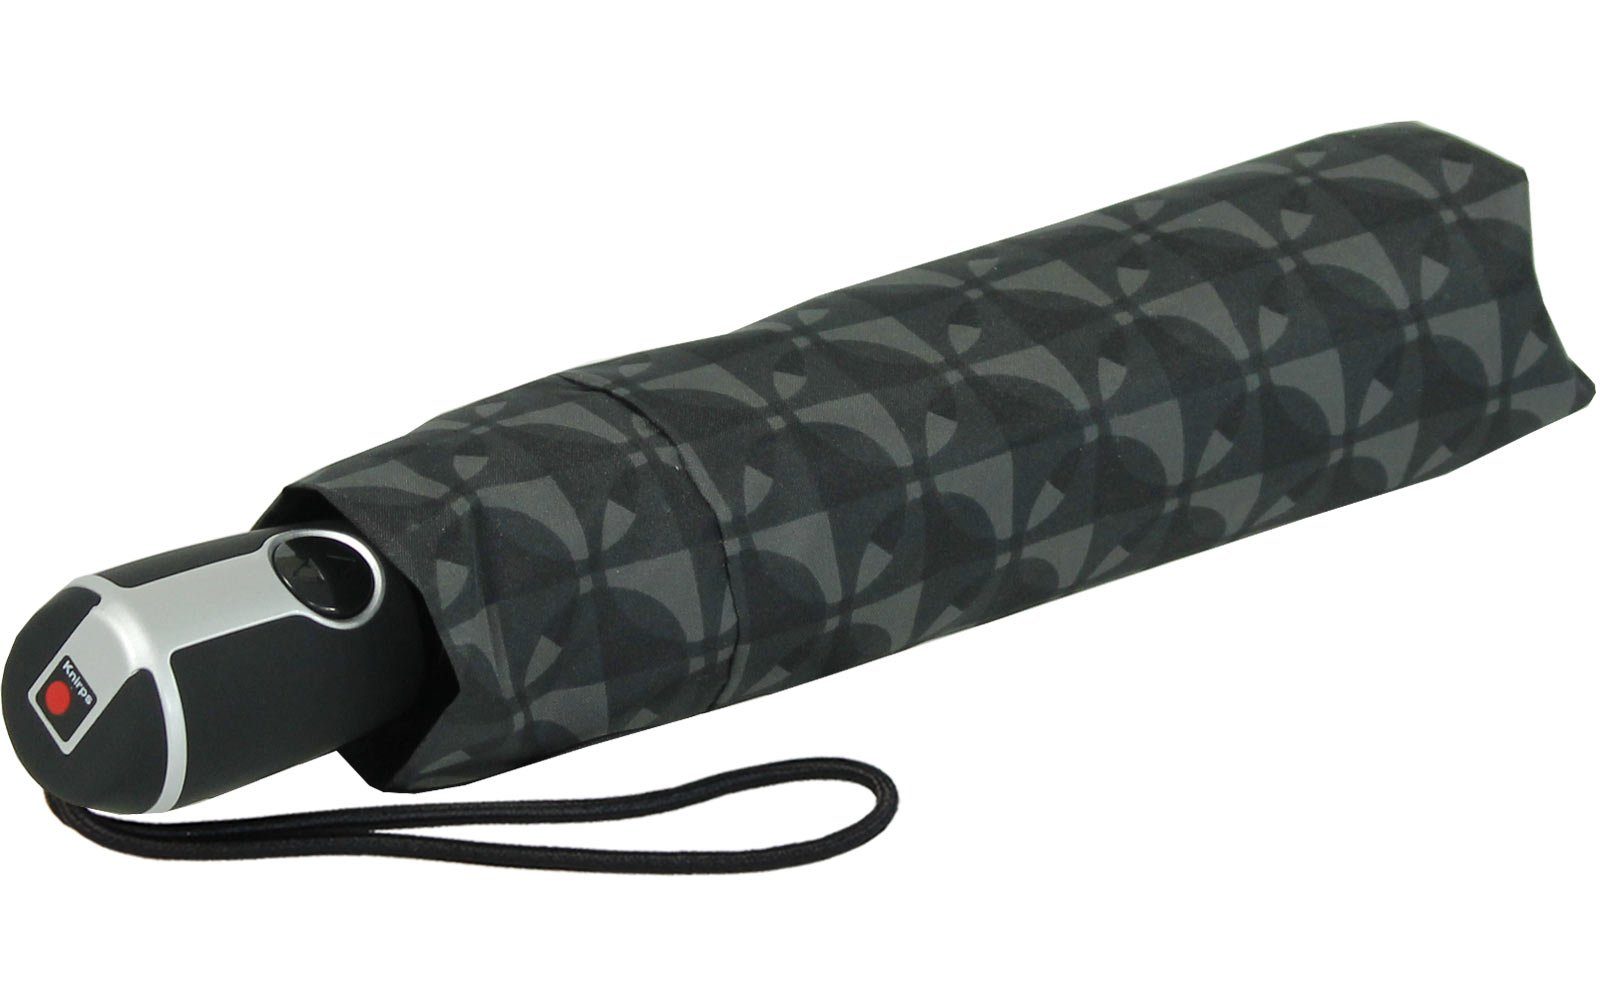 Duomatic große, Auf-Zu-Automatik Knirps® Nimbus black, mit Begleiter Large Taschenregenschirm - der stabile